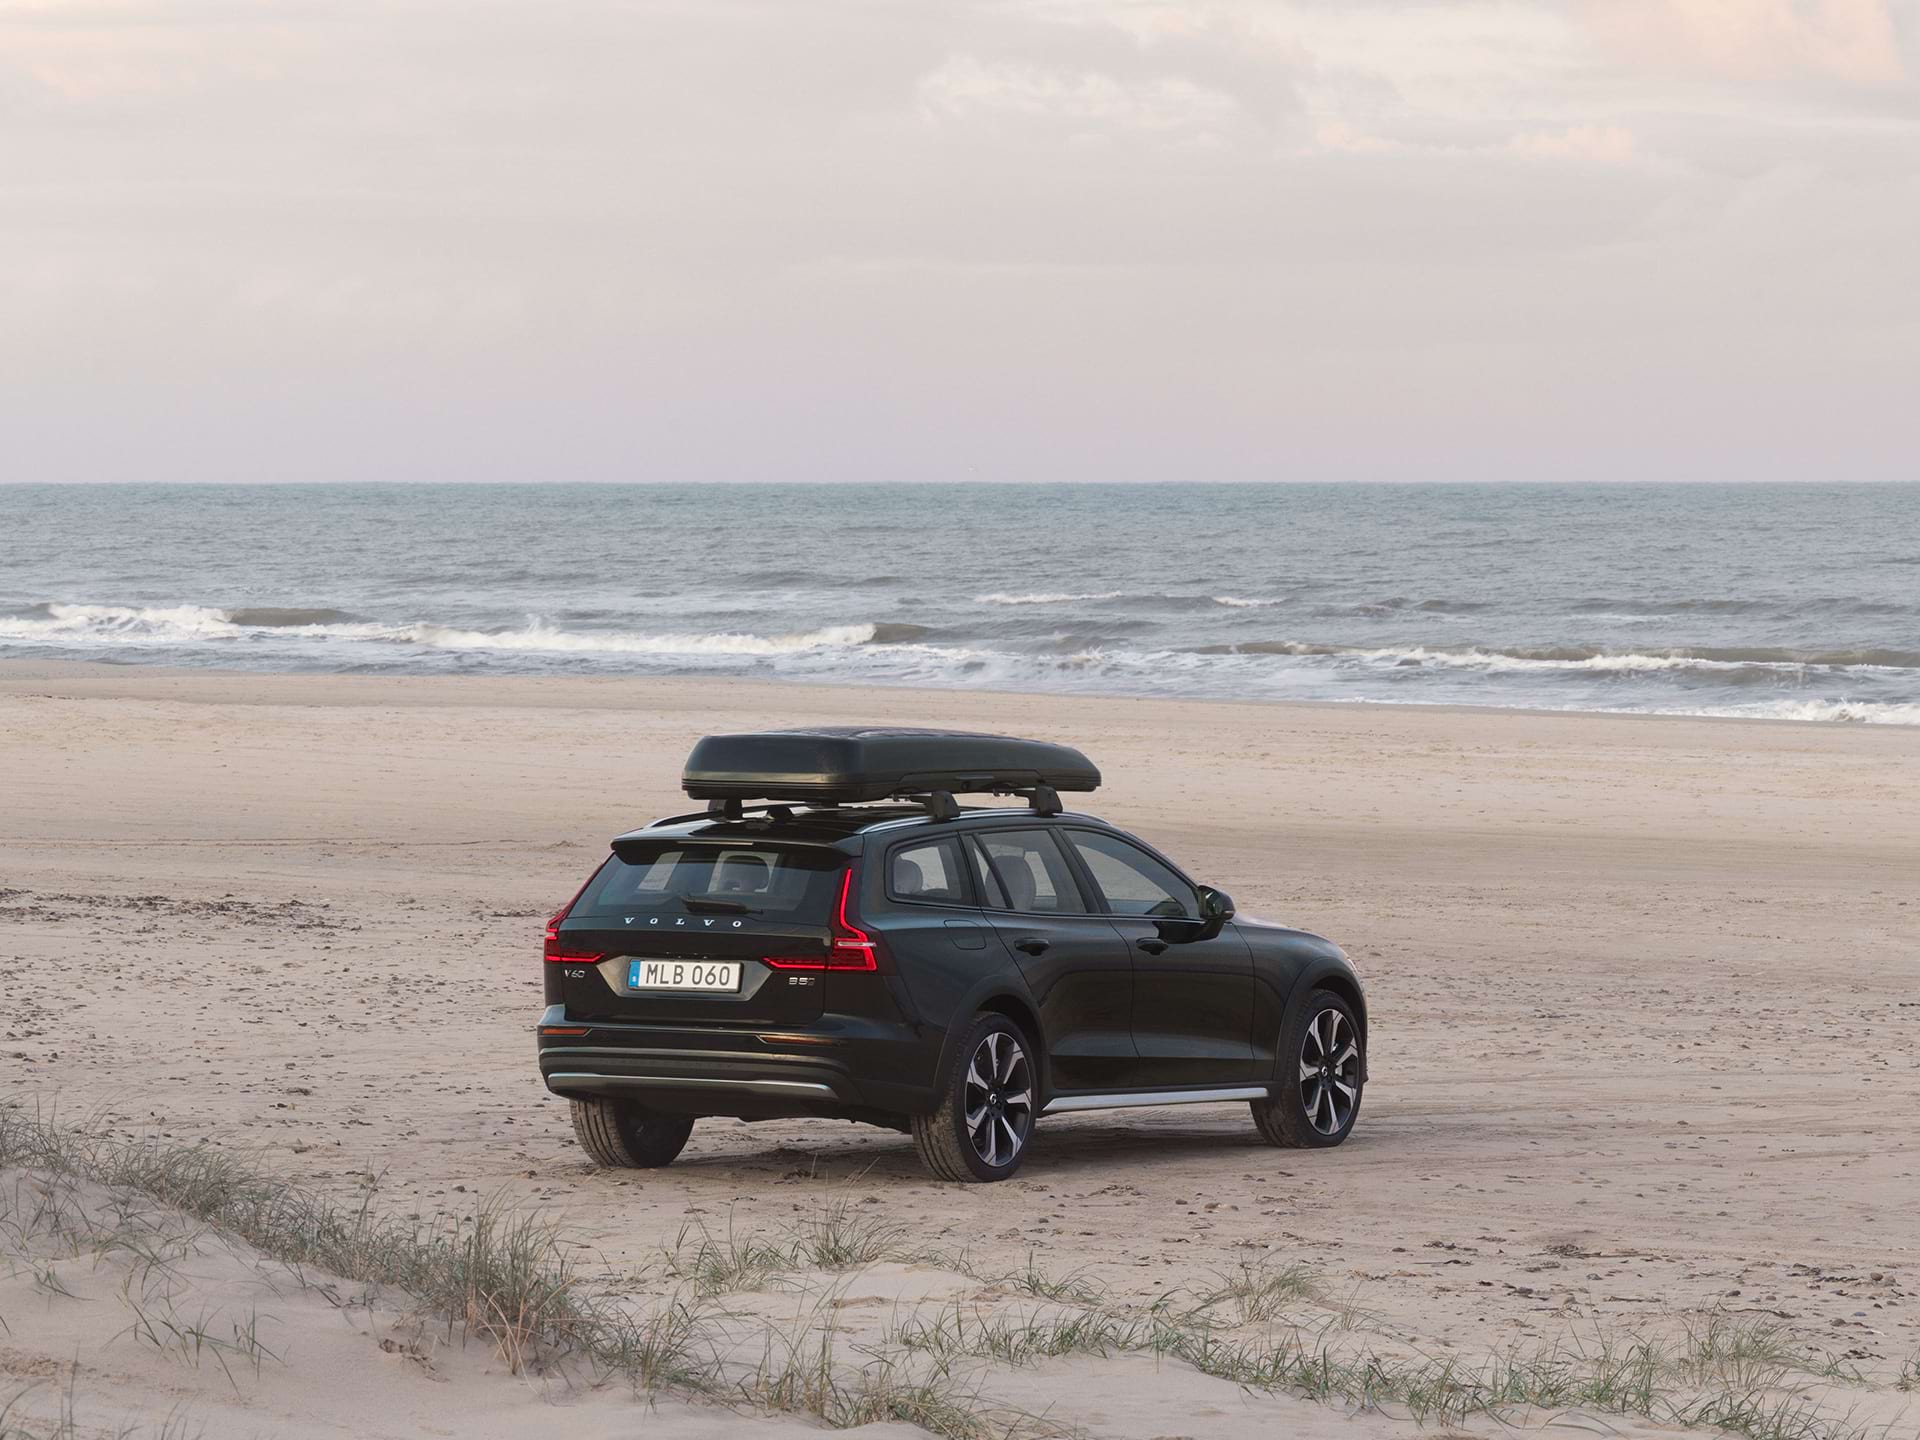 En kombi från Volvo med takbox står parkerad på en sandstrand.